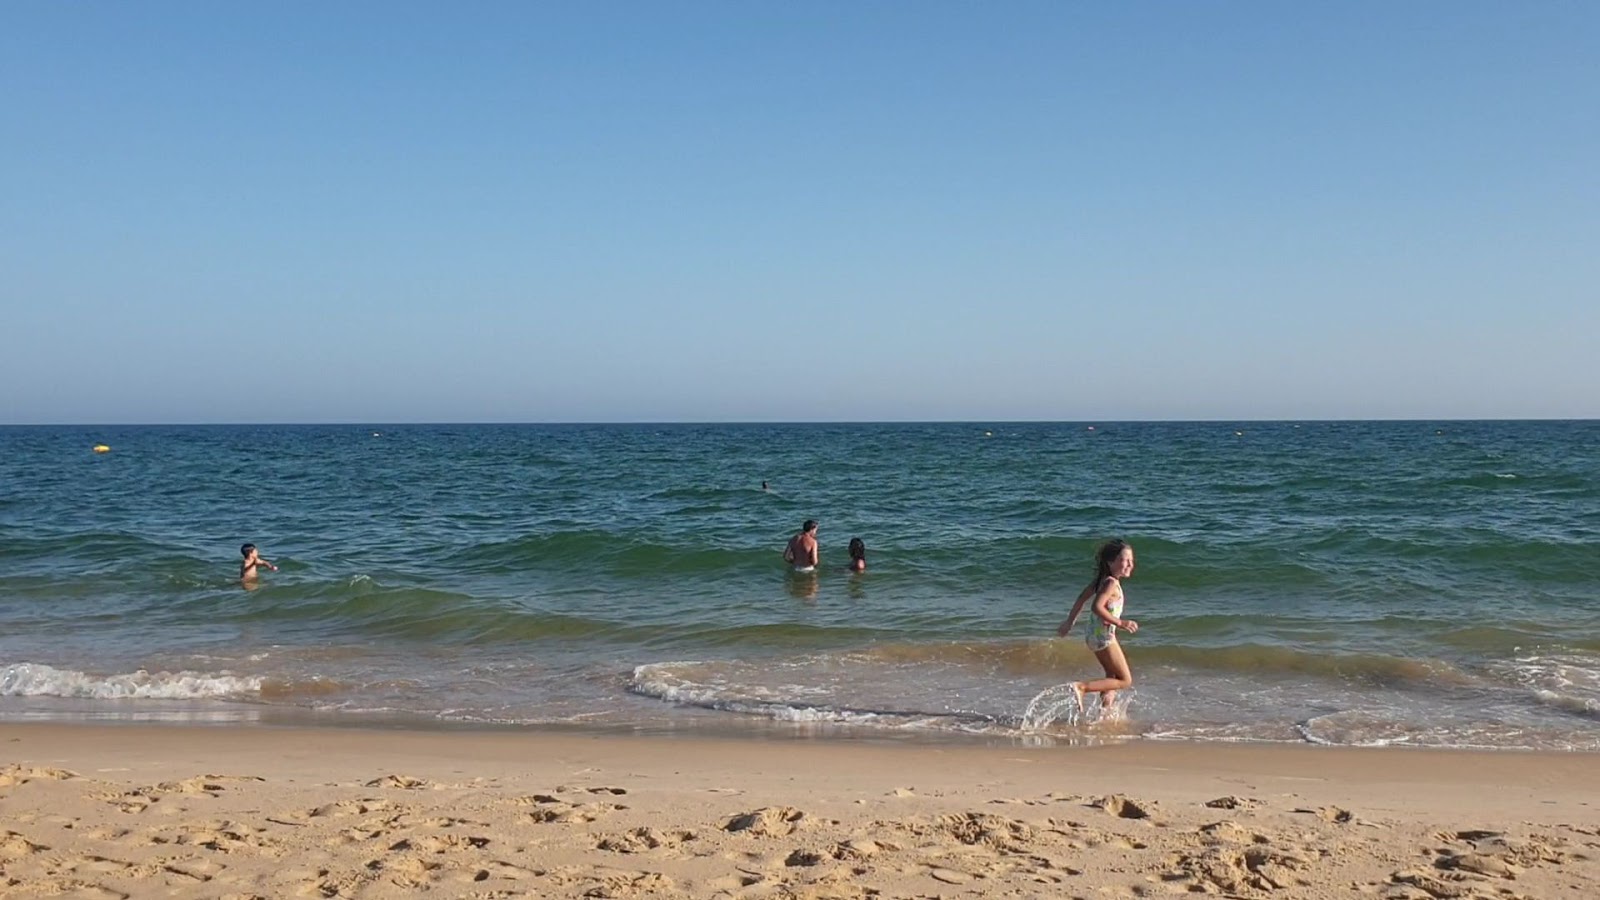 Verde Plajı'in fotoğrafı çok temiz temizlik seviyesi ile